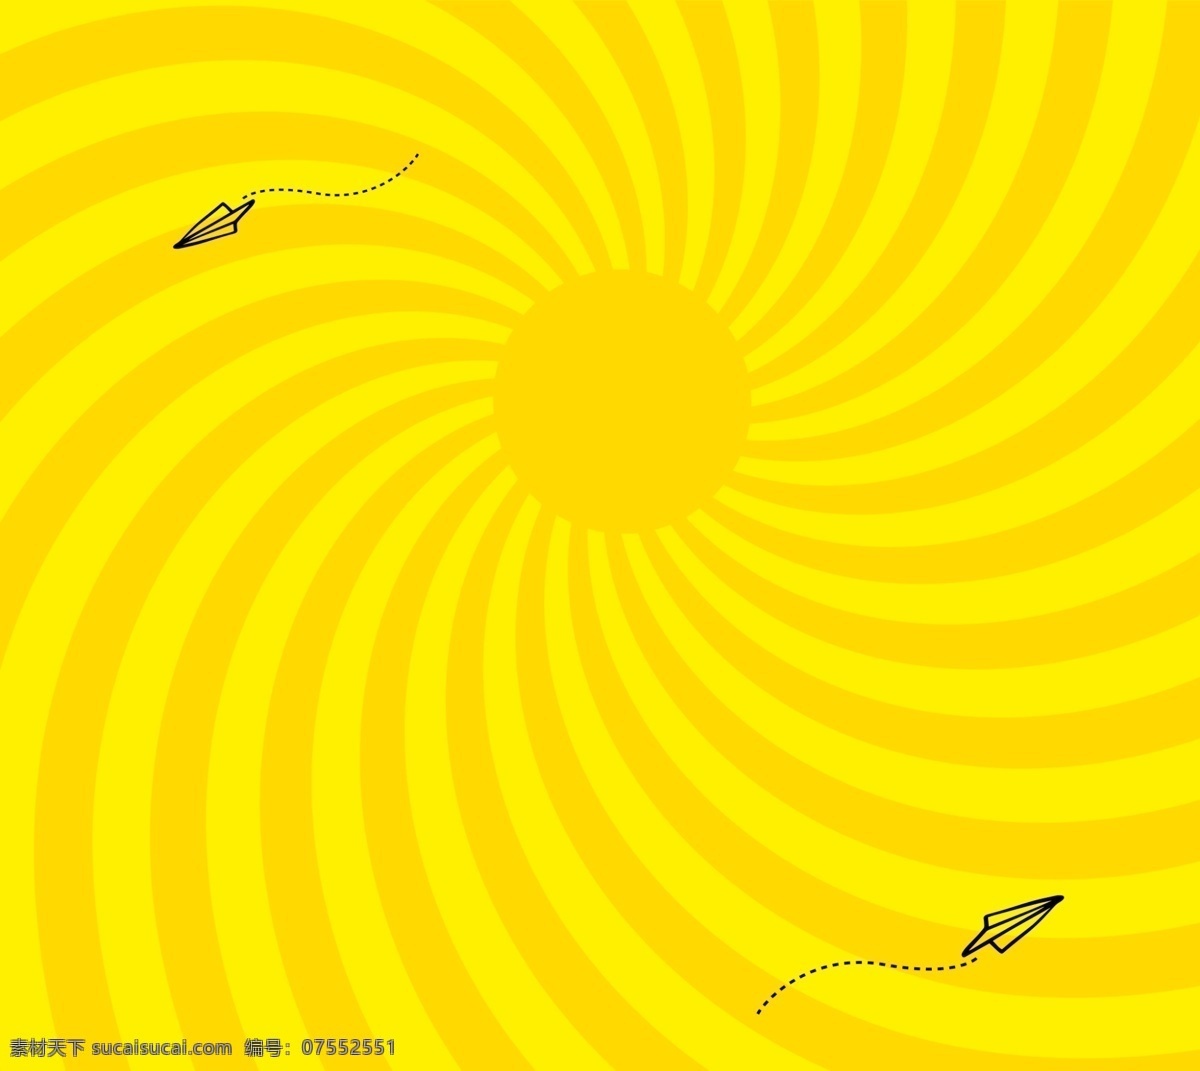 曲线散射背景 曲线旋转 线条纸飞机 卡通纸飞机 漩涡 单面库 底纹边框 条纹线条